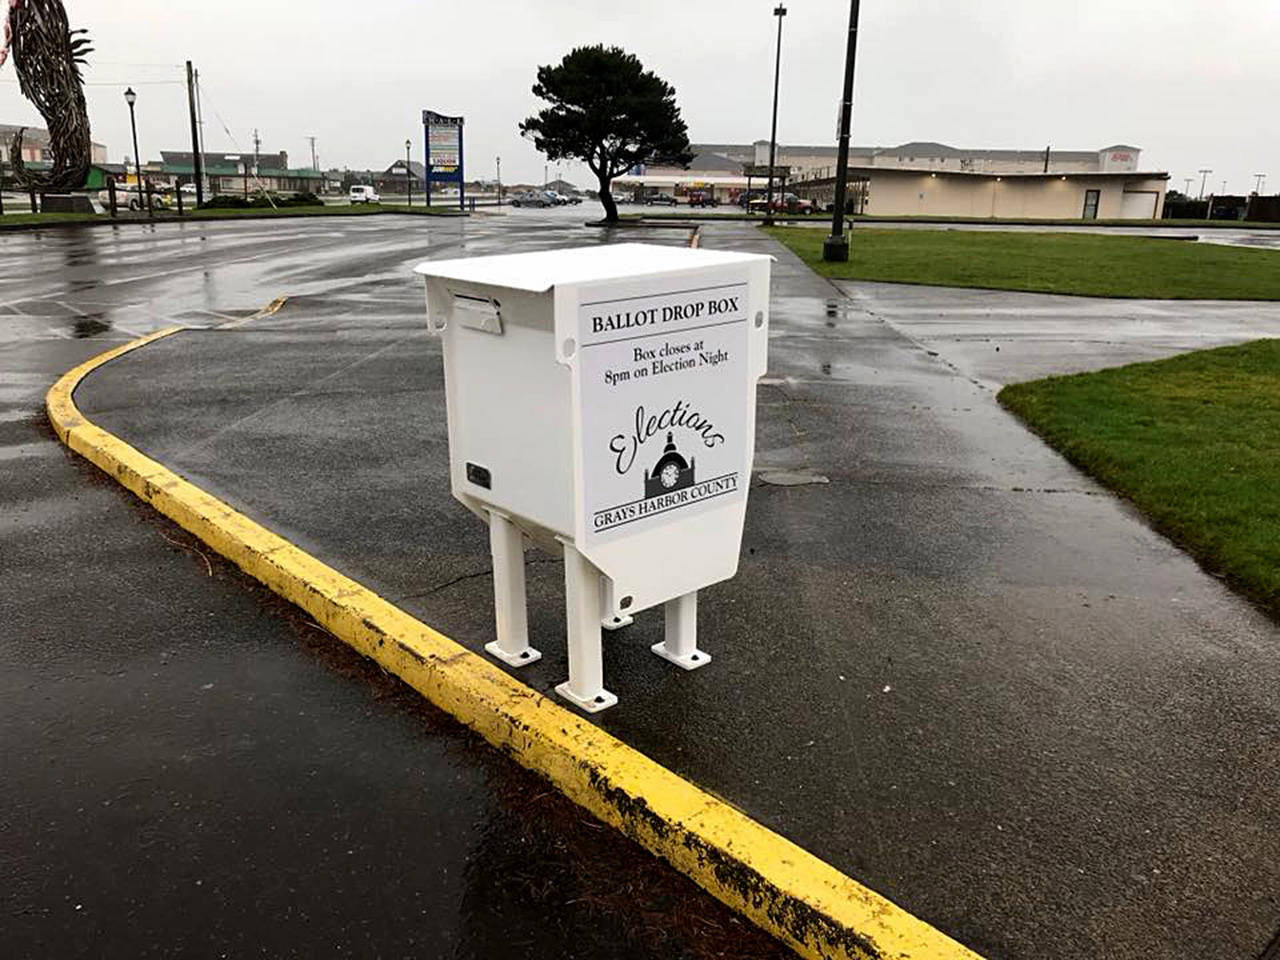 Election ballot drop box installed for Ocean Shores